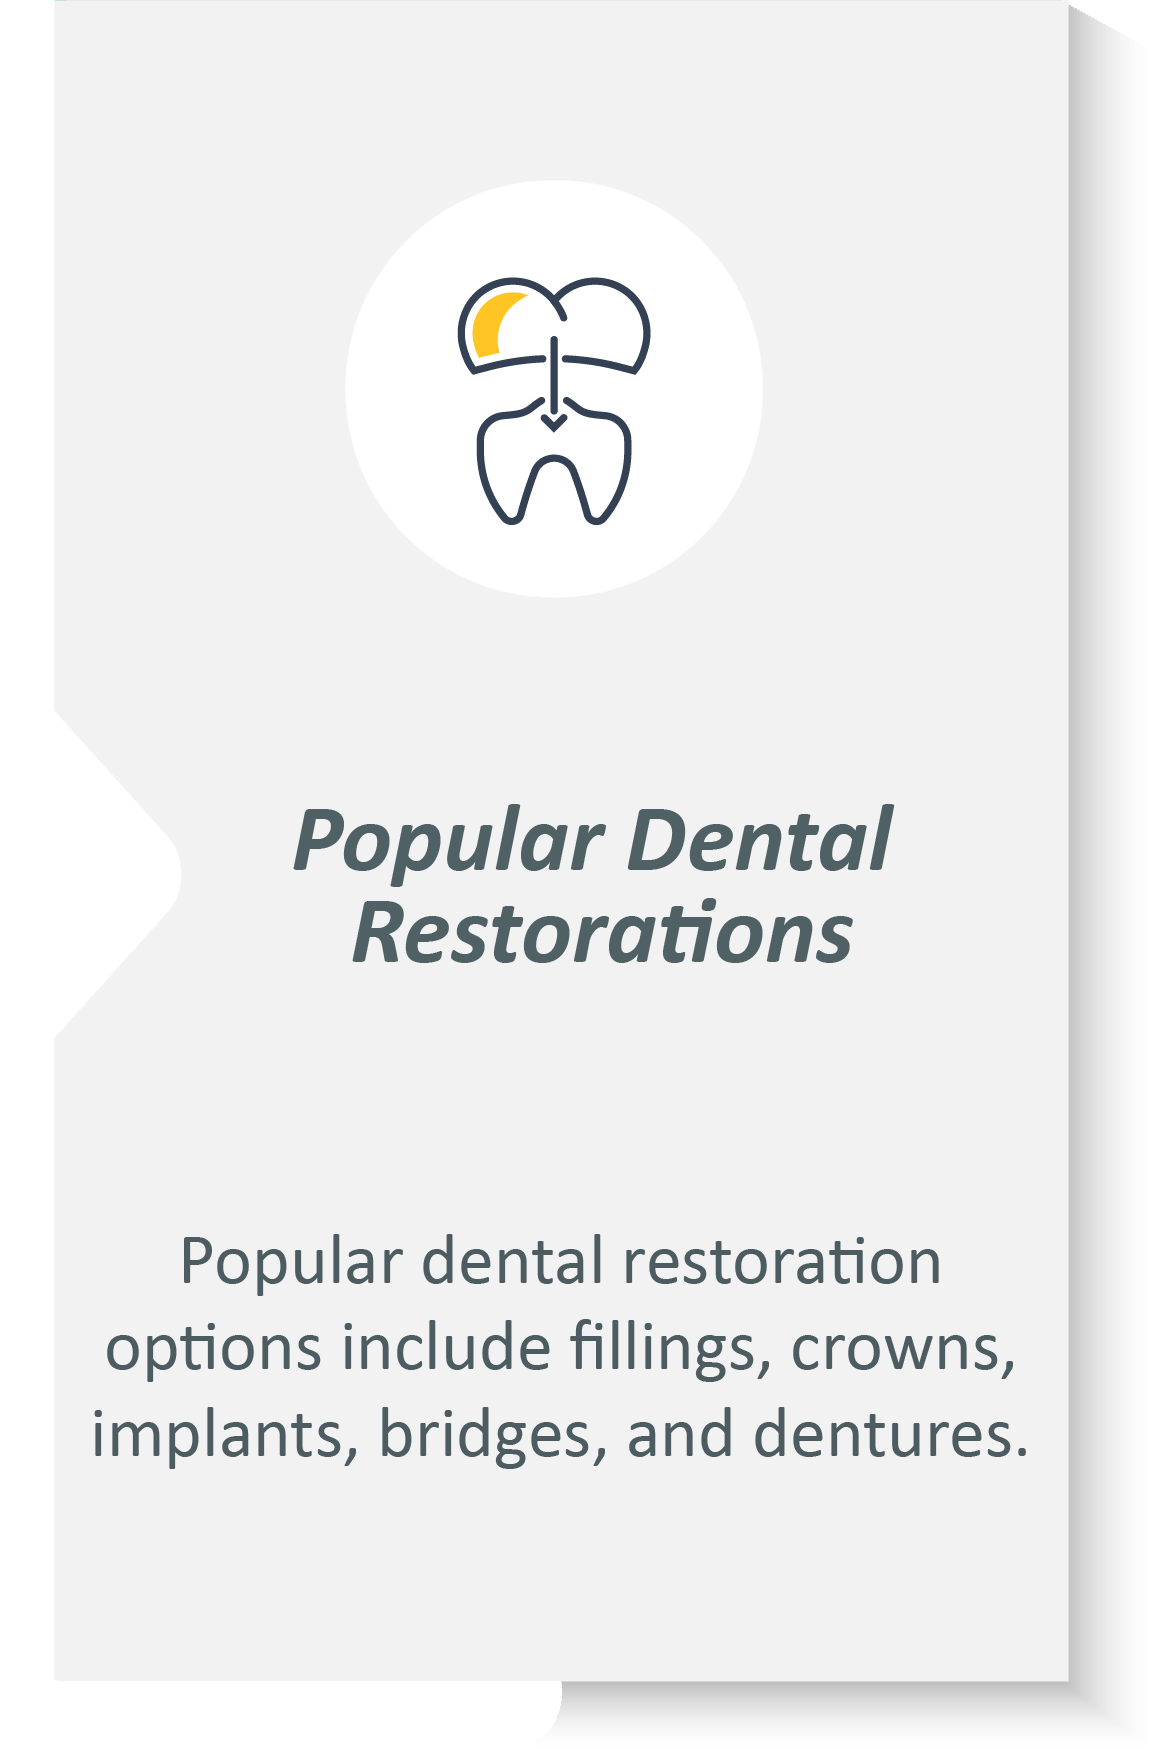 Dental restorations infographic: Popular dental restoration options include fillings, crowns, implants, bridges, and dentures.